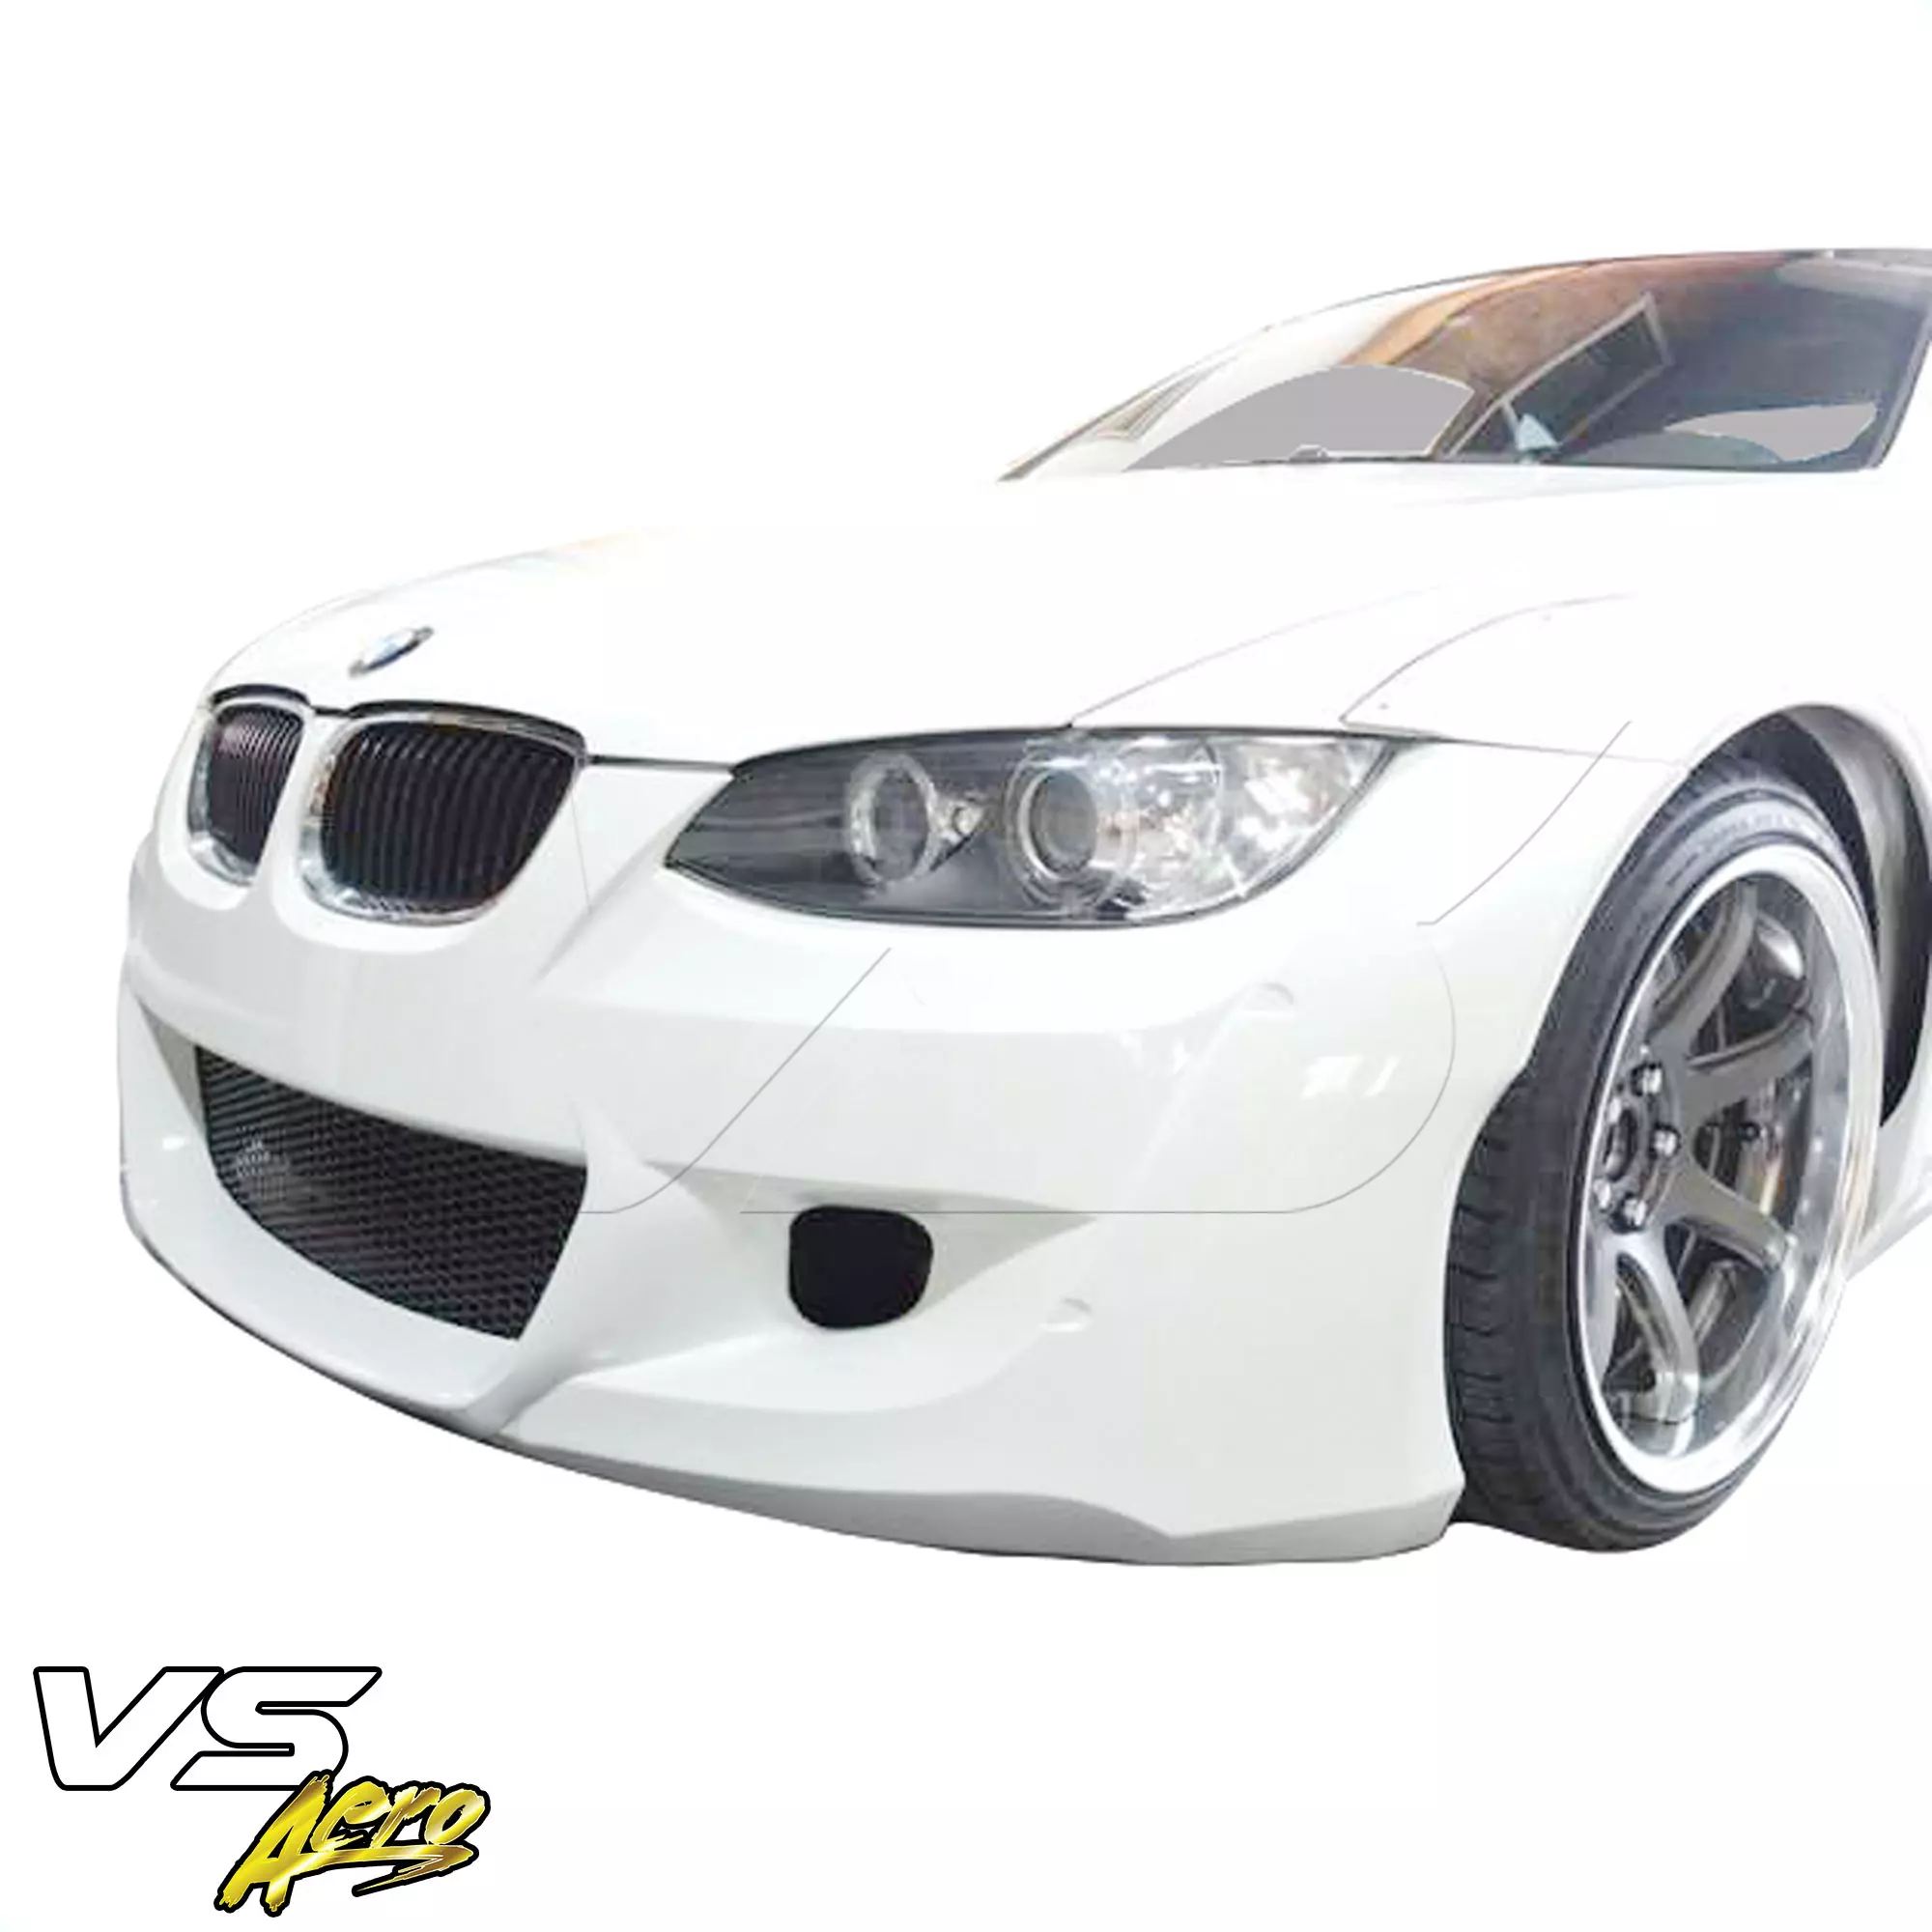 VSaero FRP TKYO Wide Body Front Bumper > BMW M3 E92 2008-2013 > 2dr - Image 2